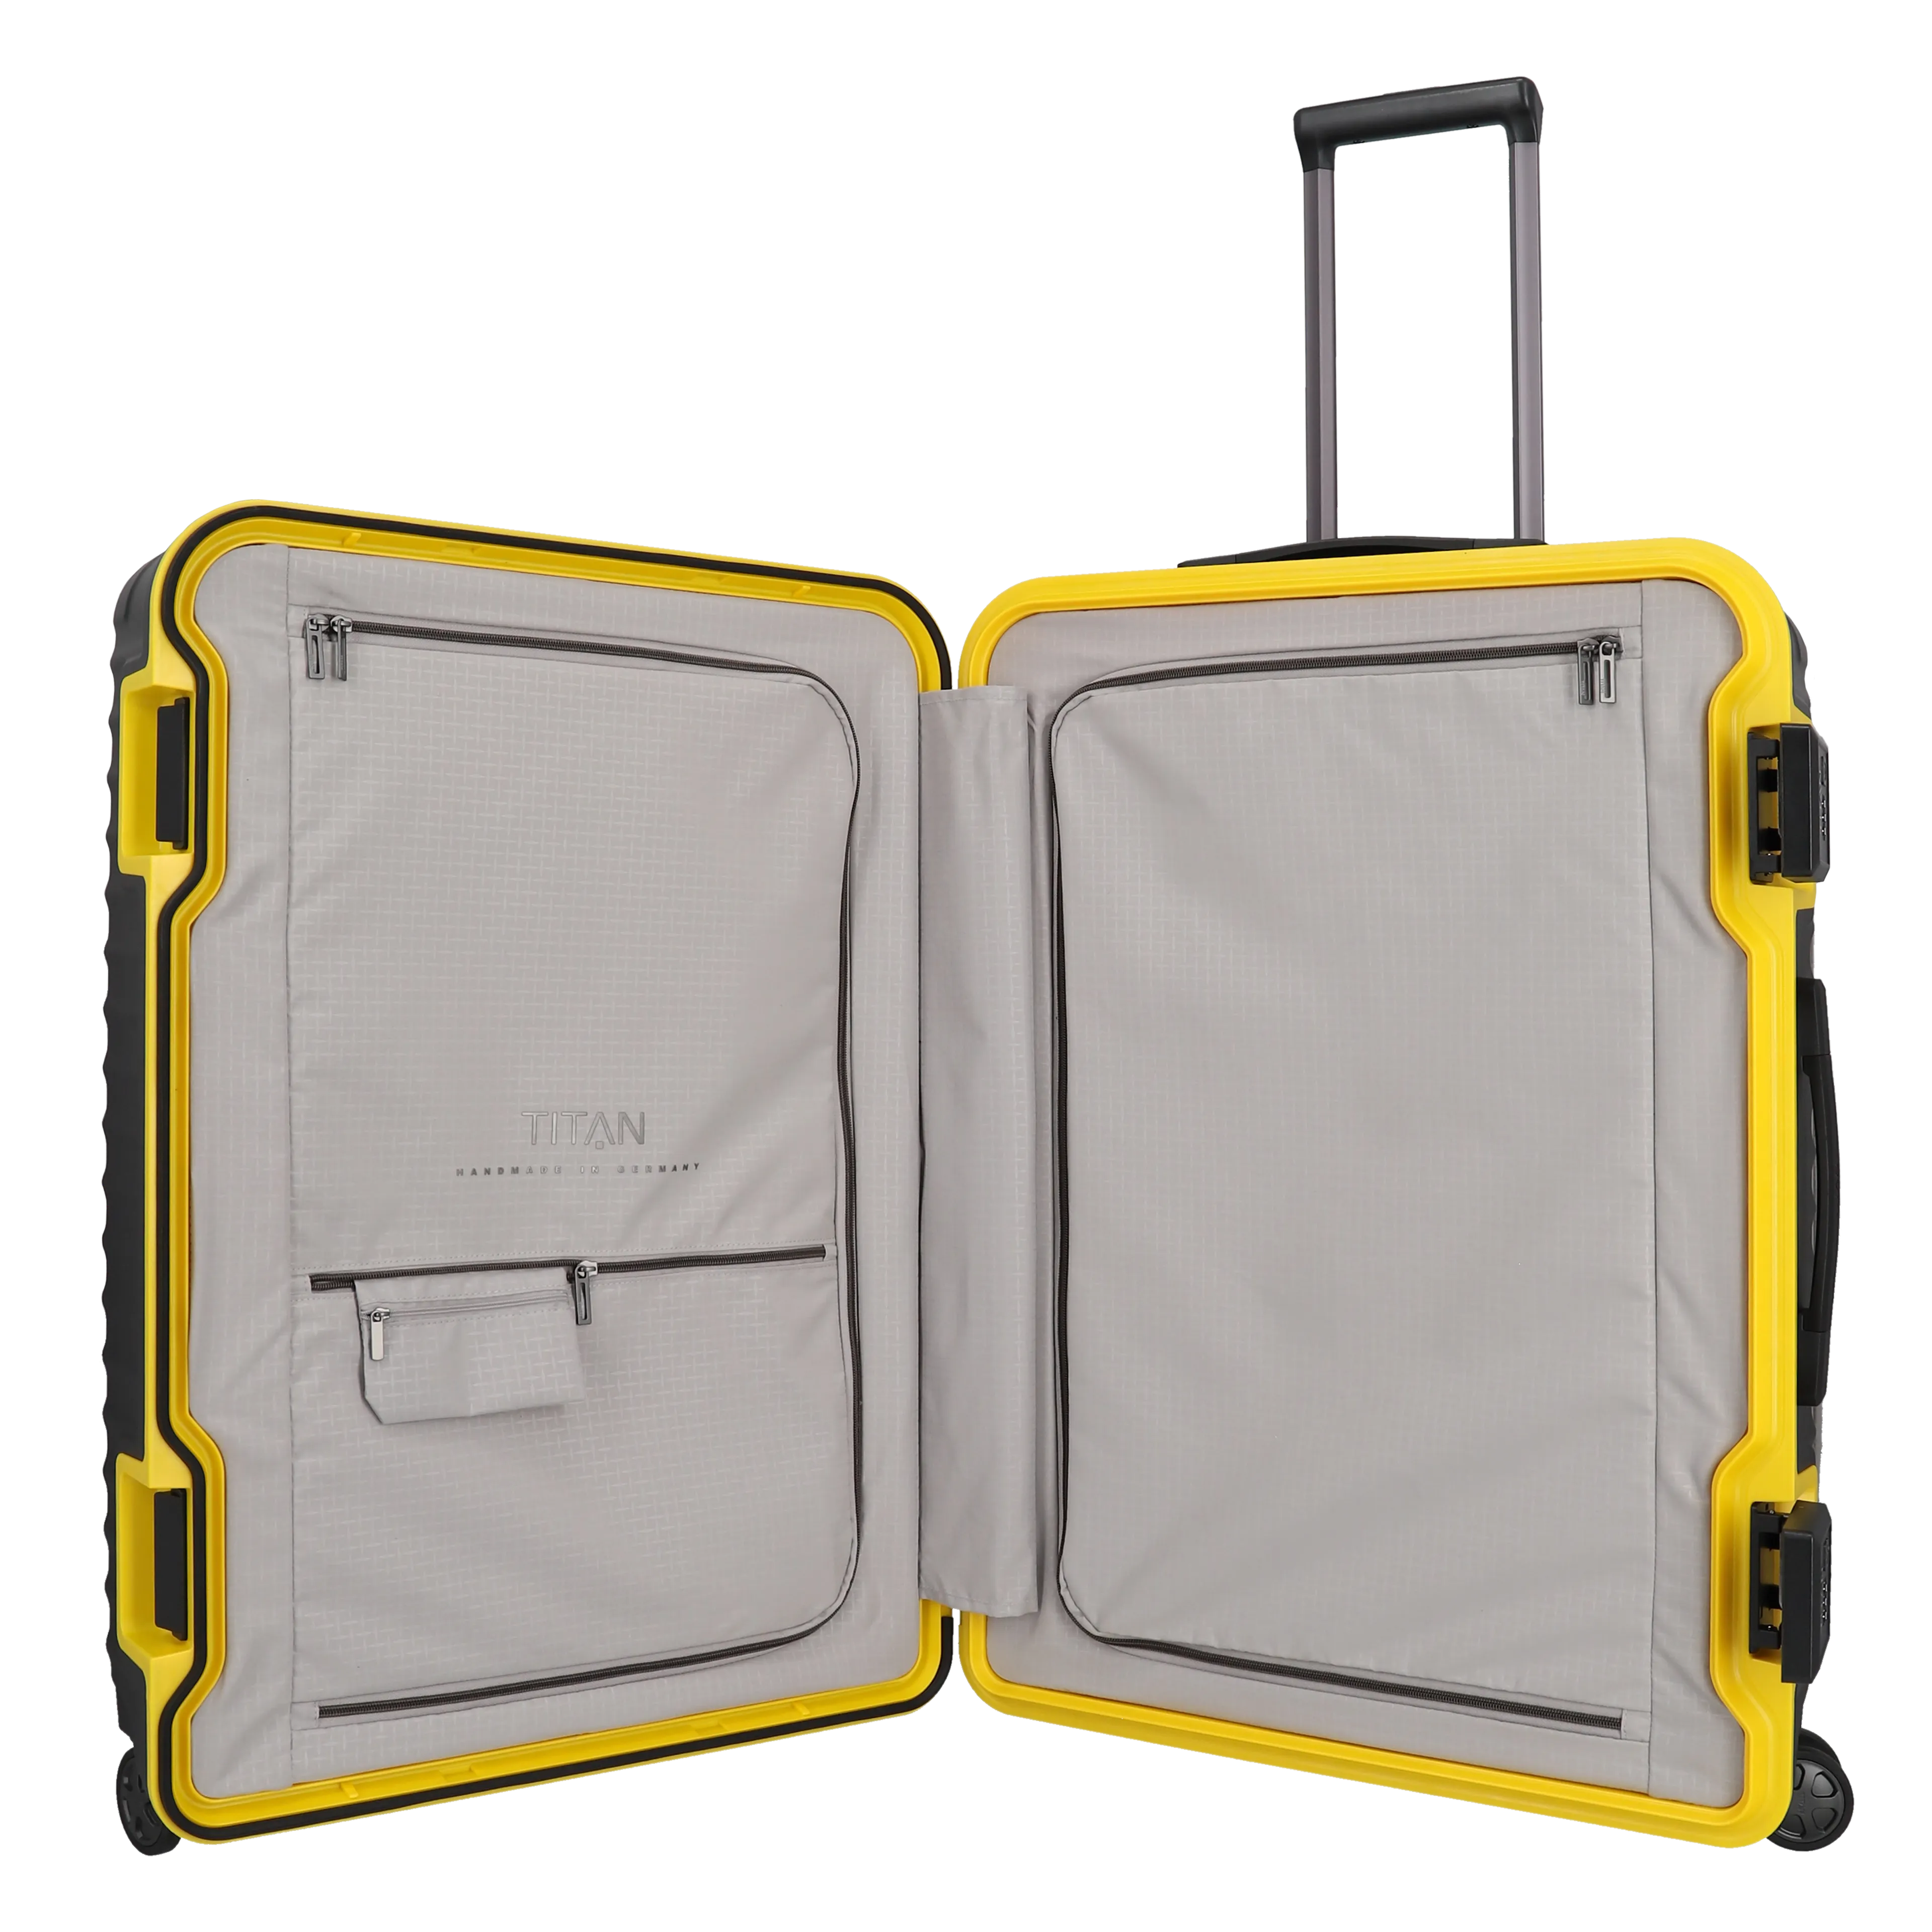 Ein TITAN Koffer der Serie LITRON Frame BVB Edition Innenansicht in schwarz/gelb Größe L 75cm